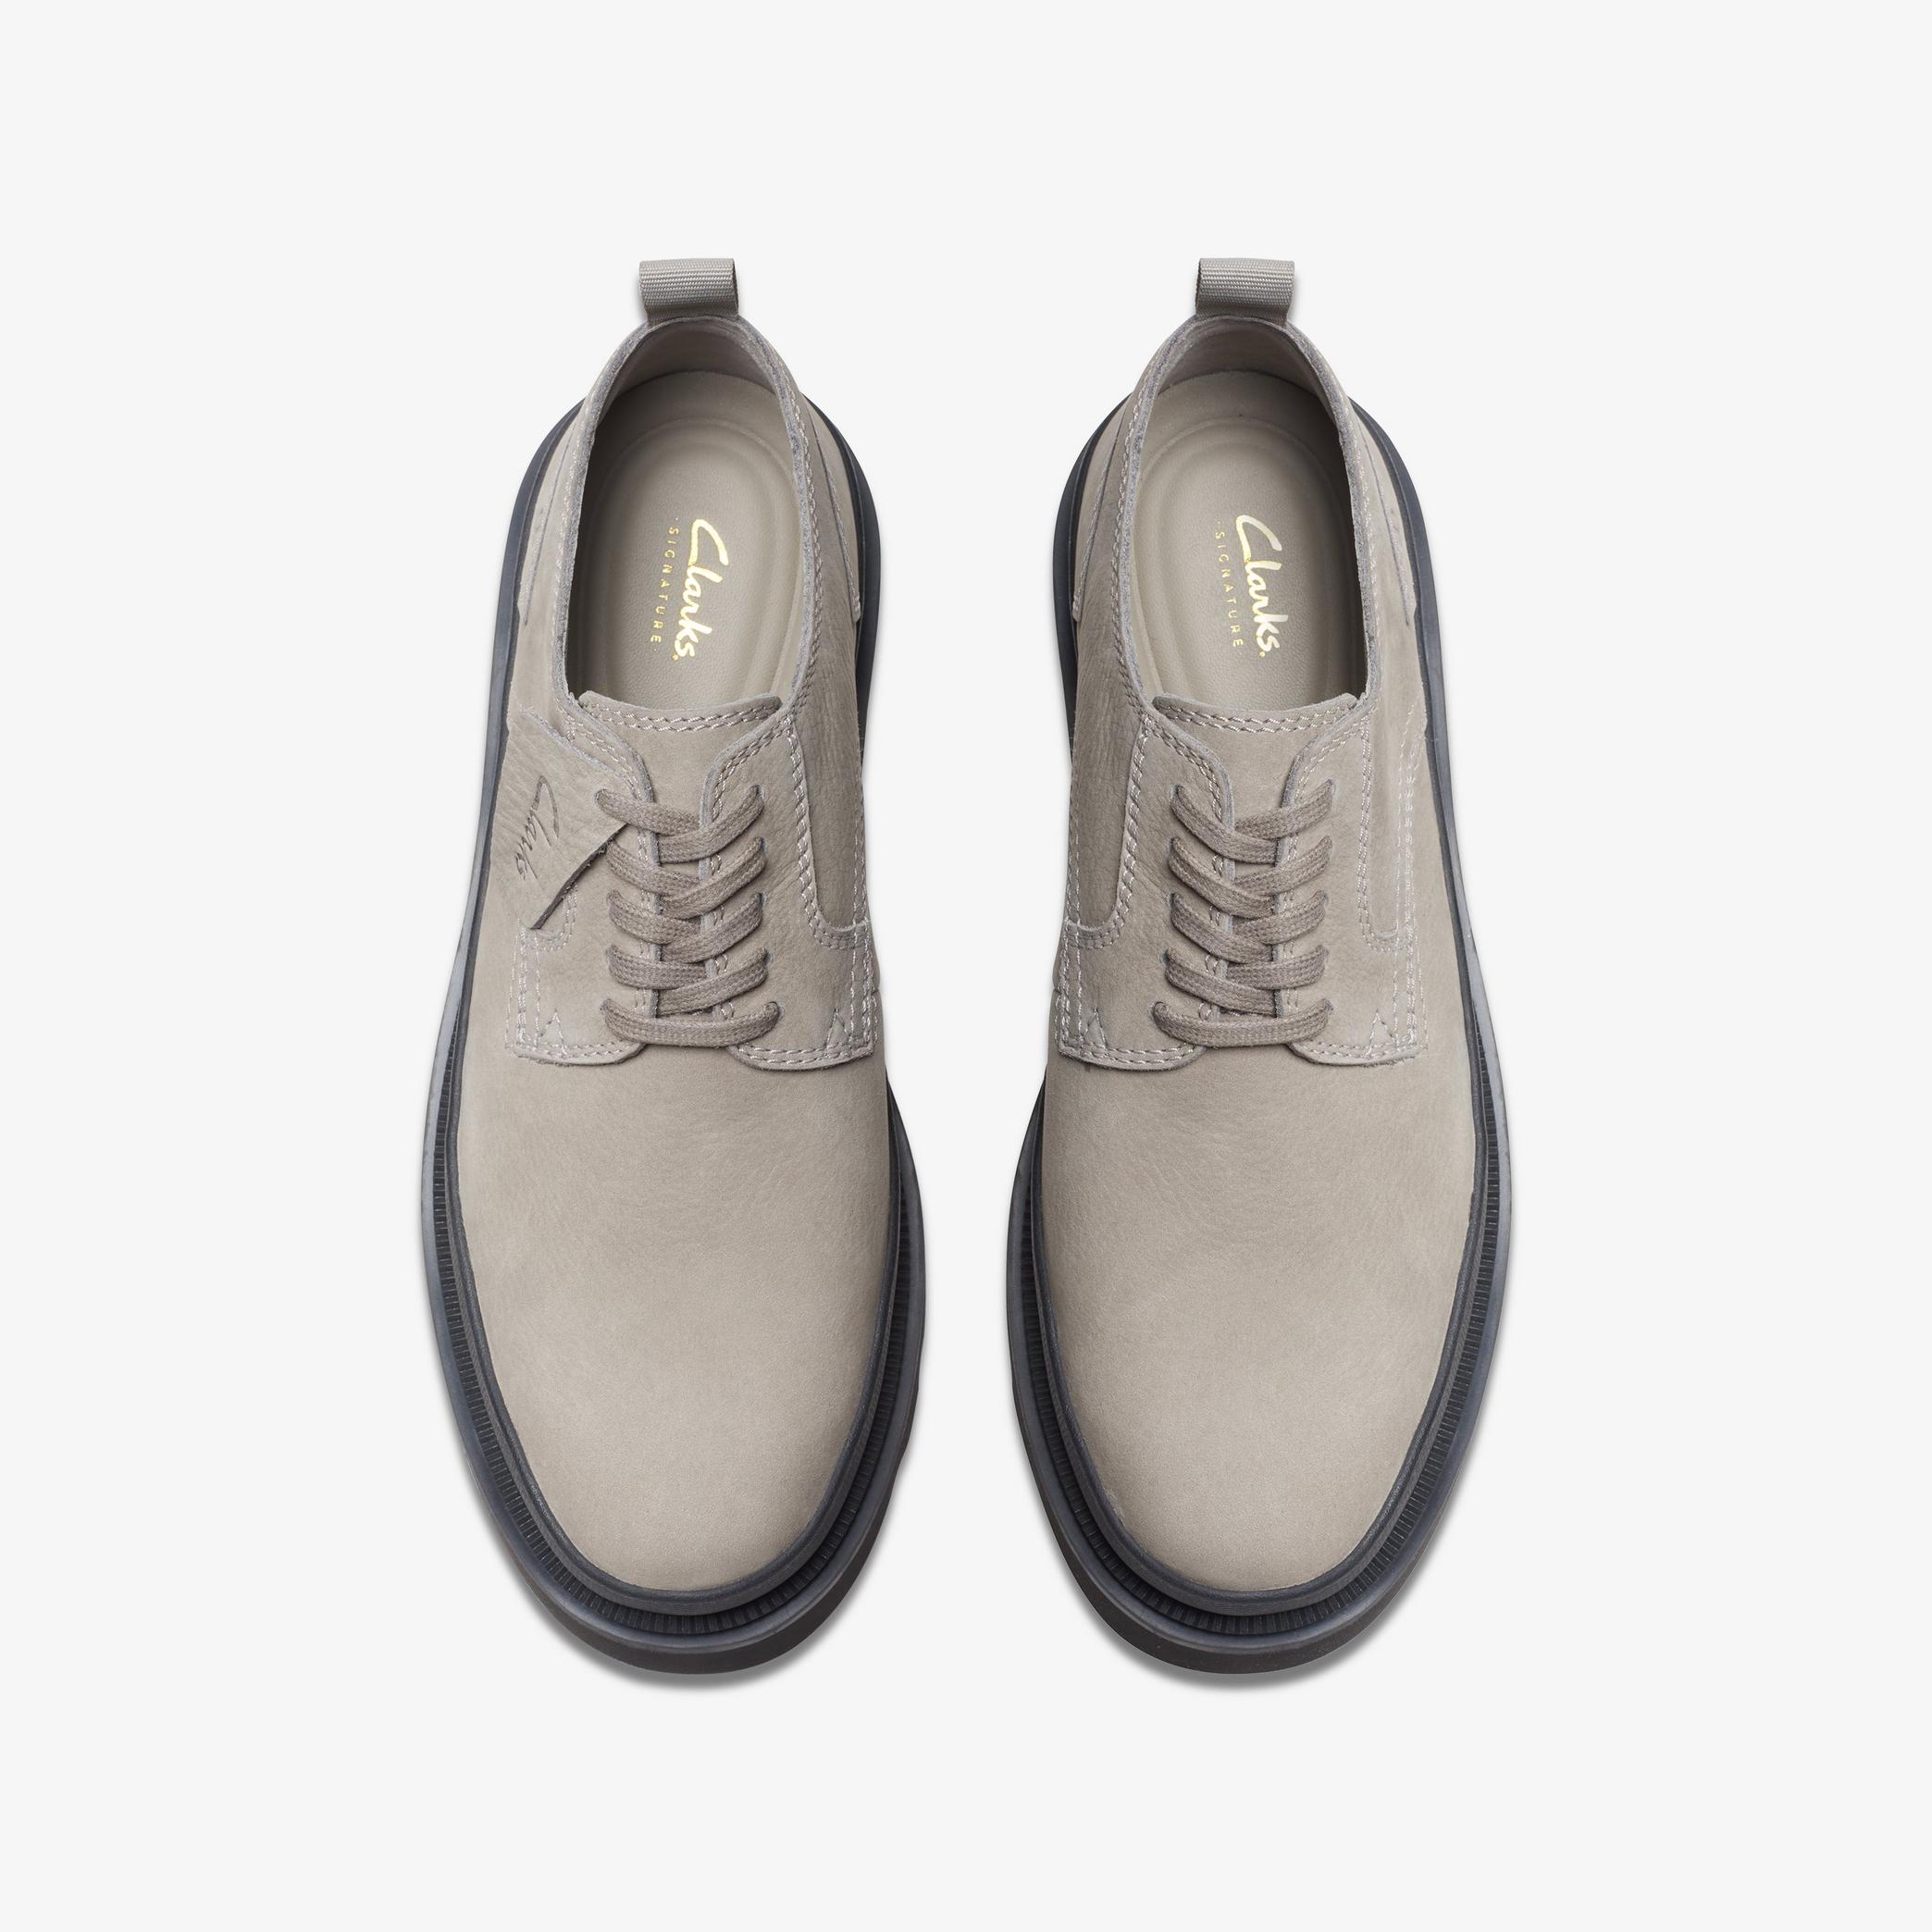 Chaussures Oxford en nubuck gris avec dentelle Badell, vue 6 de 6